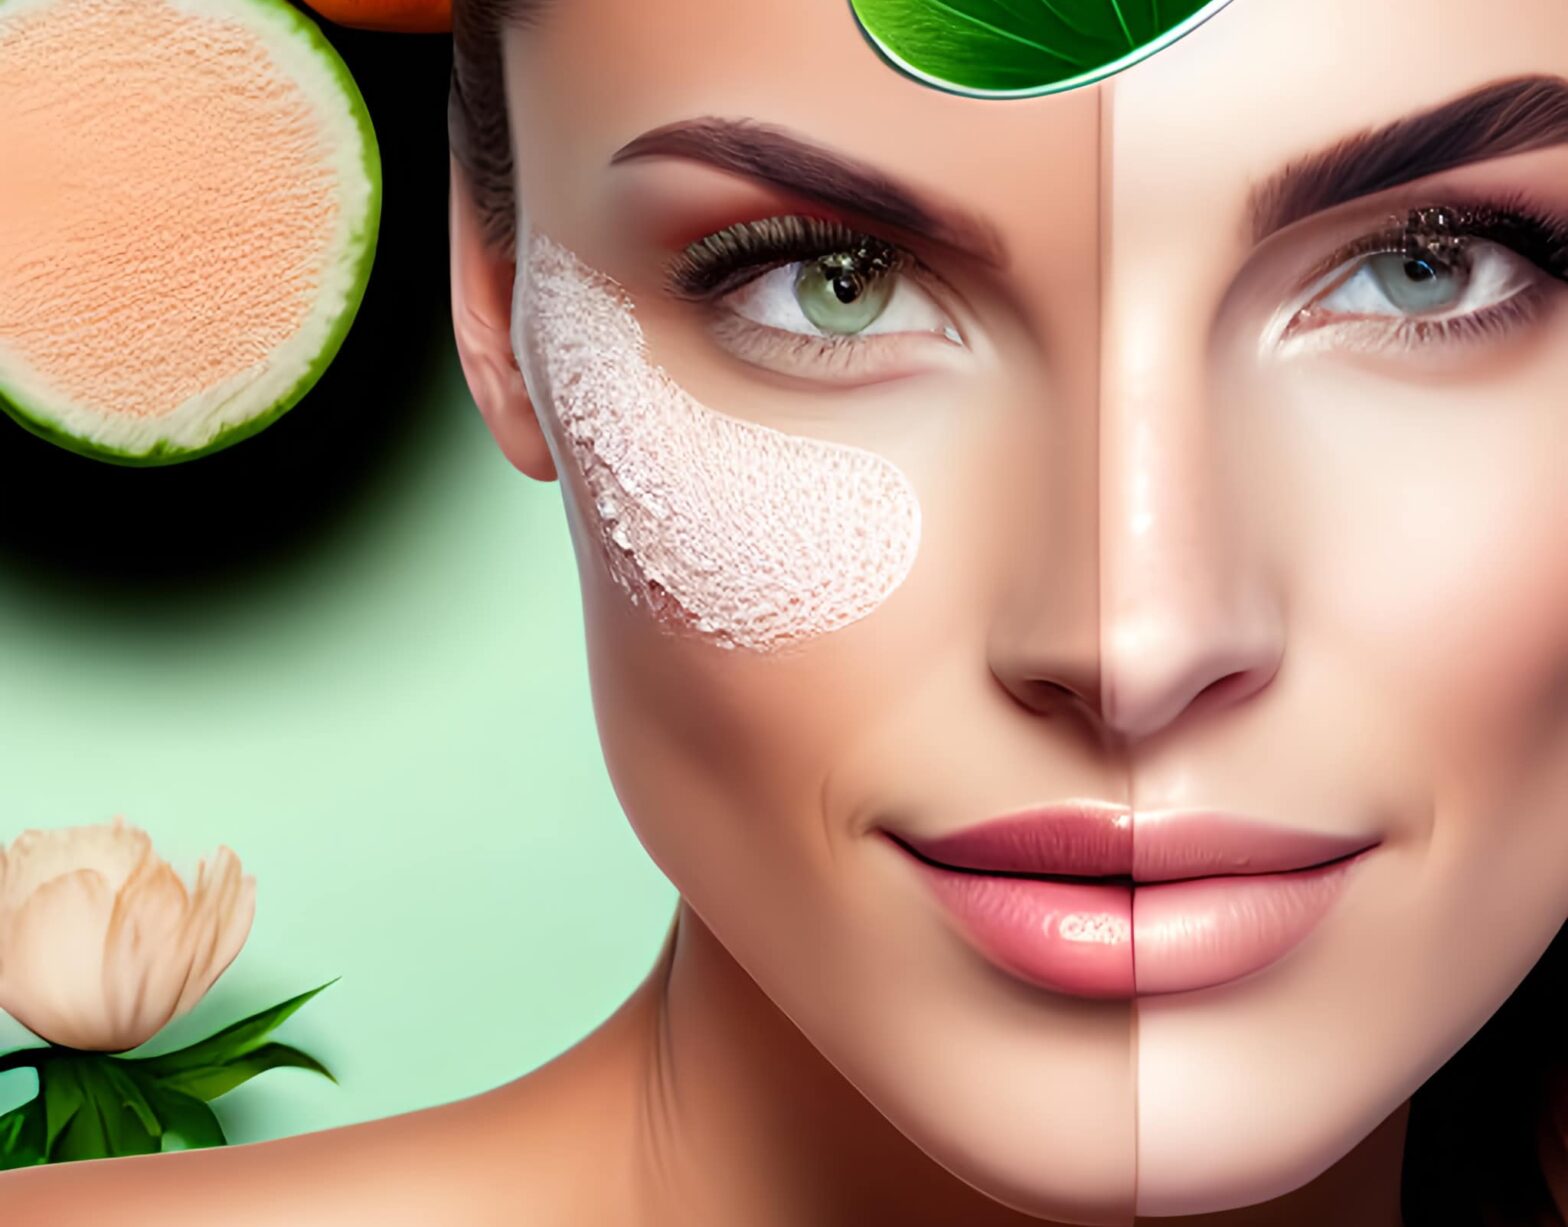 30 की उम्र के बाद त्वचा (Skin) की देखभाल कैसे करें - Girl Face Before After